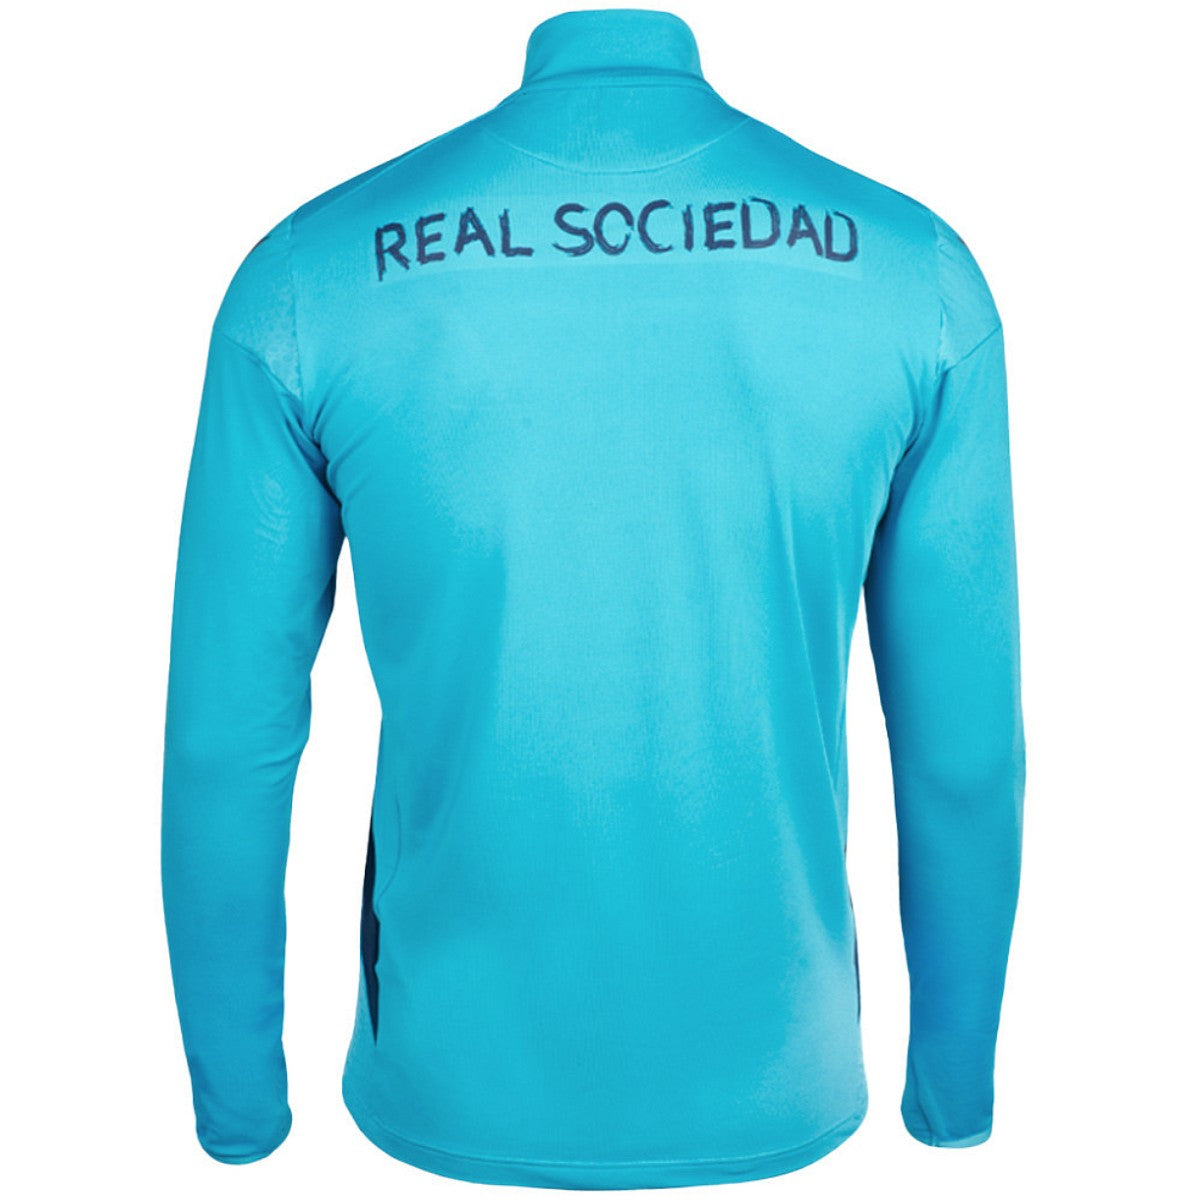 real sociedad soccer jerseys